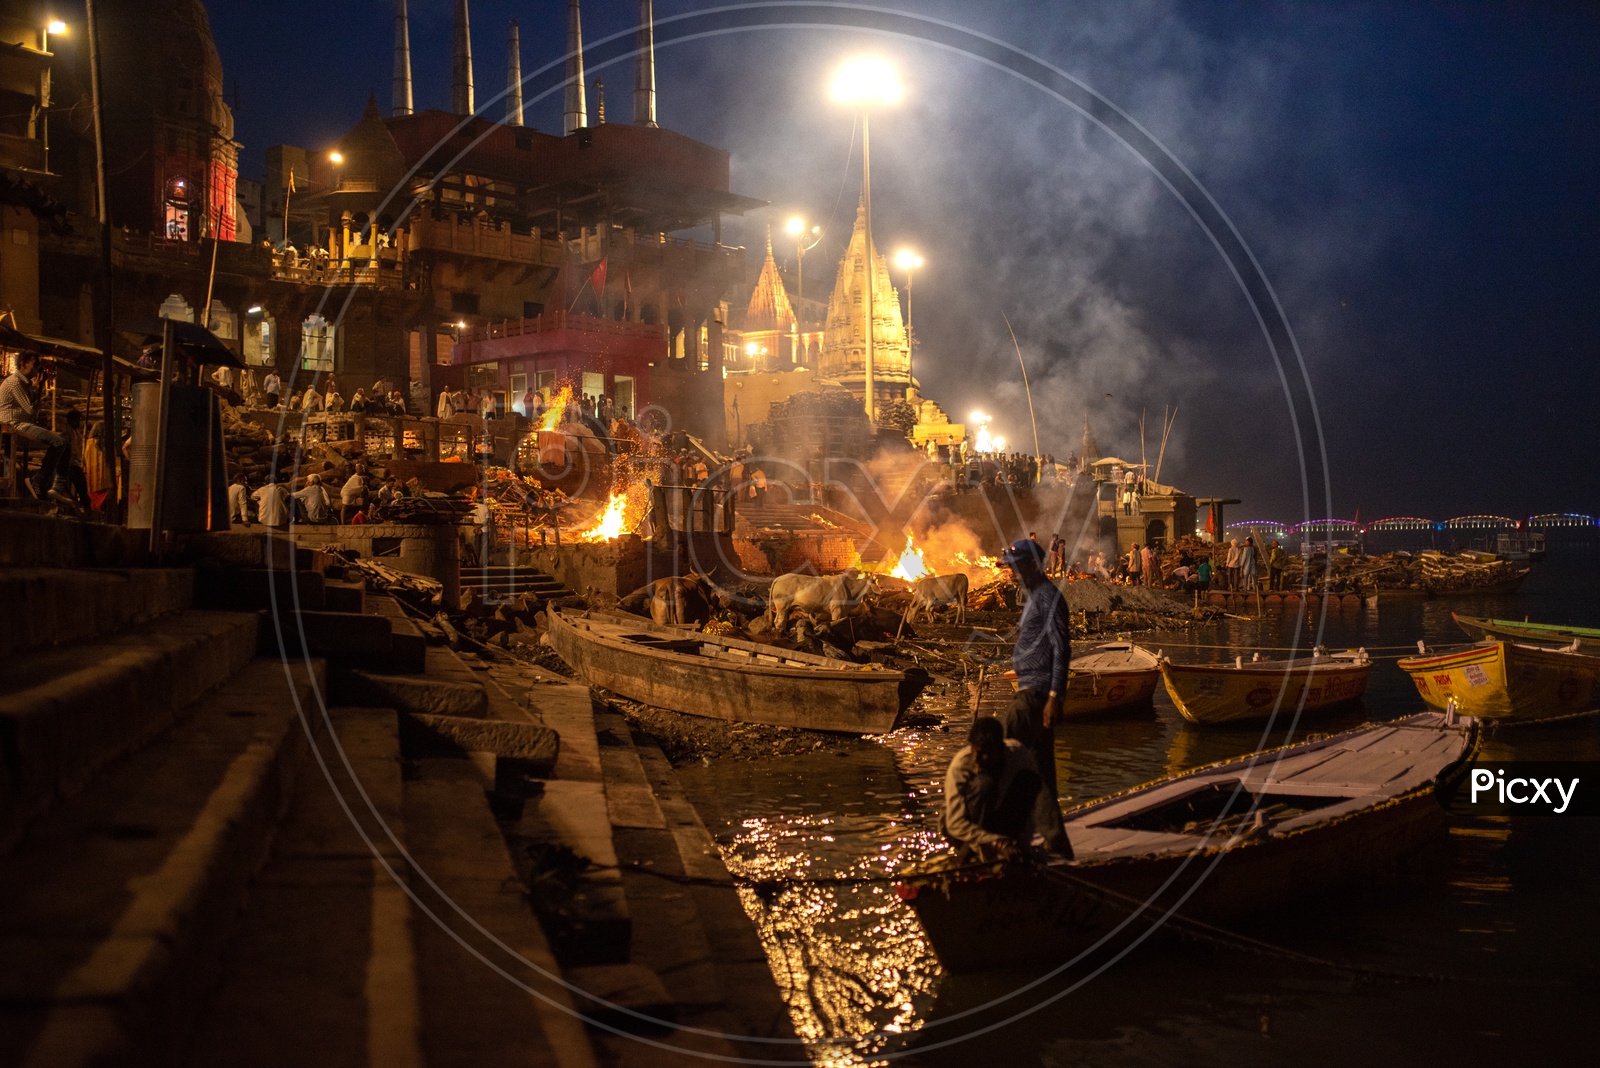 Dead Bodies Of Hindu Devotees  Being Burnt At Manikarnika Ghat  As a Ritual  In Varanasi